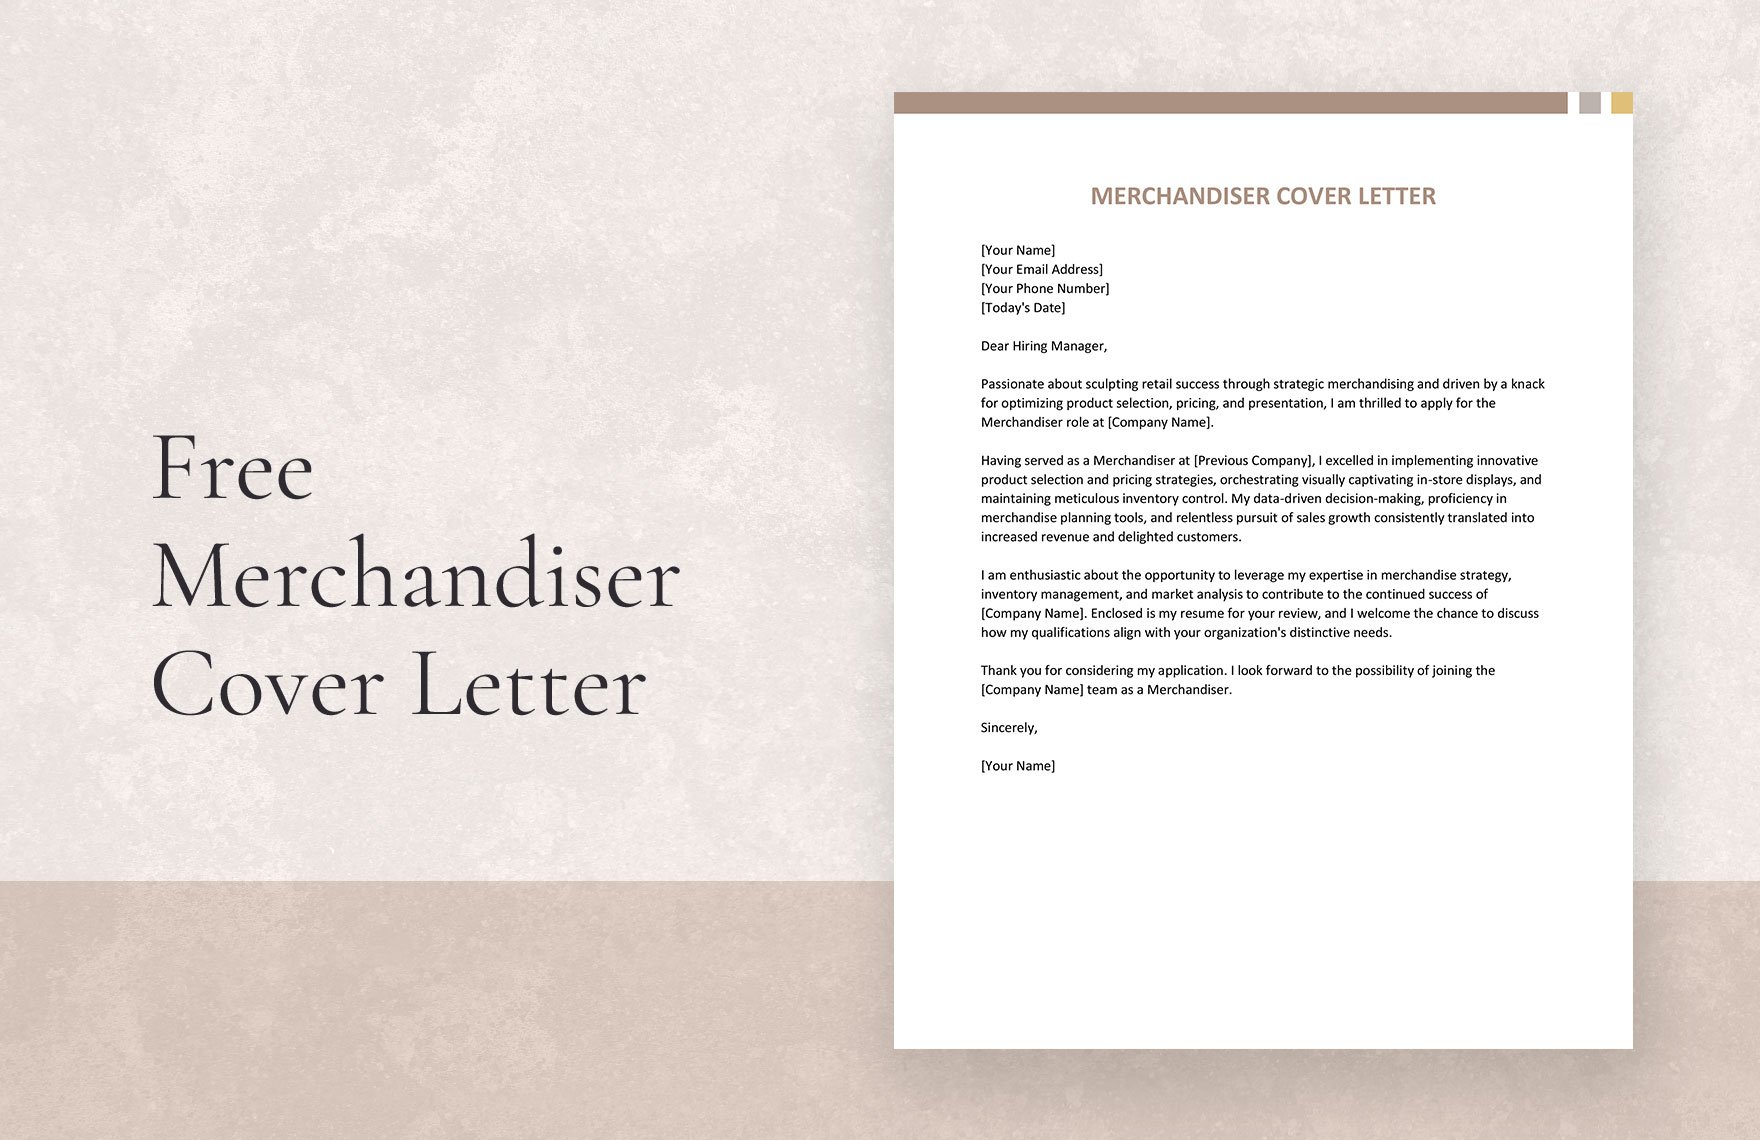 Merchandiser Cover Letter in Word, Google Docs